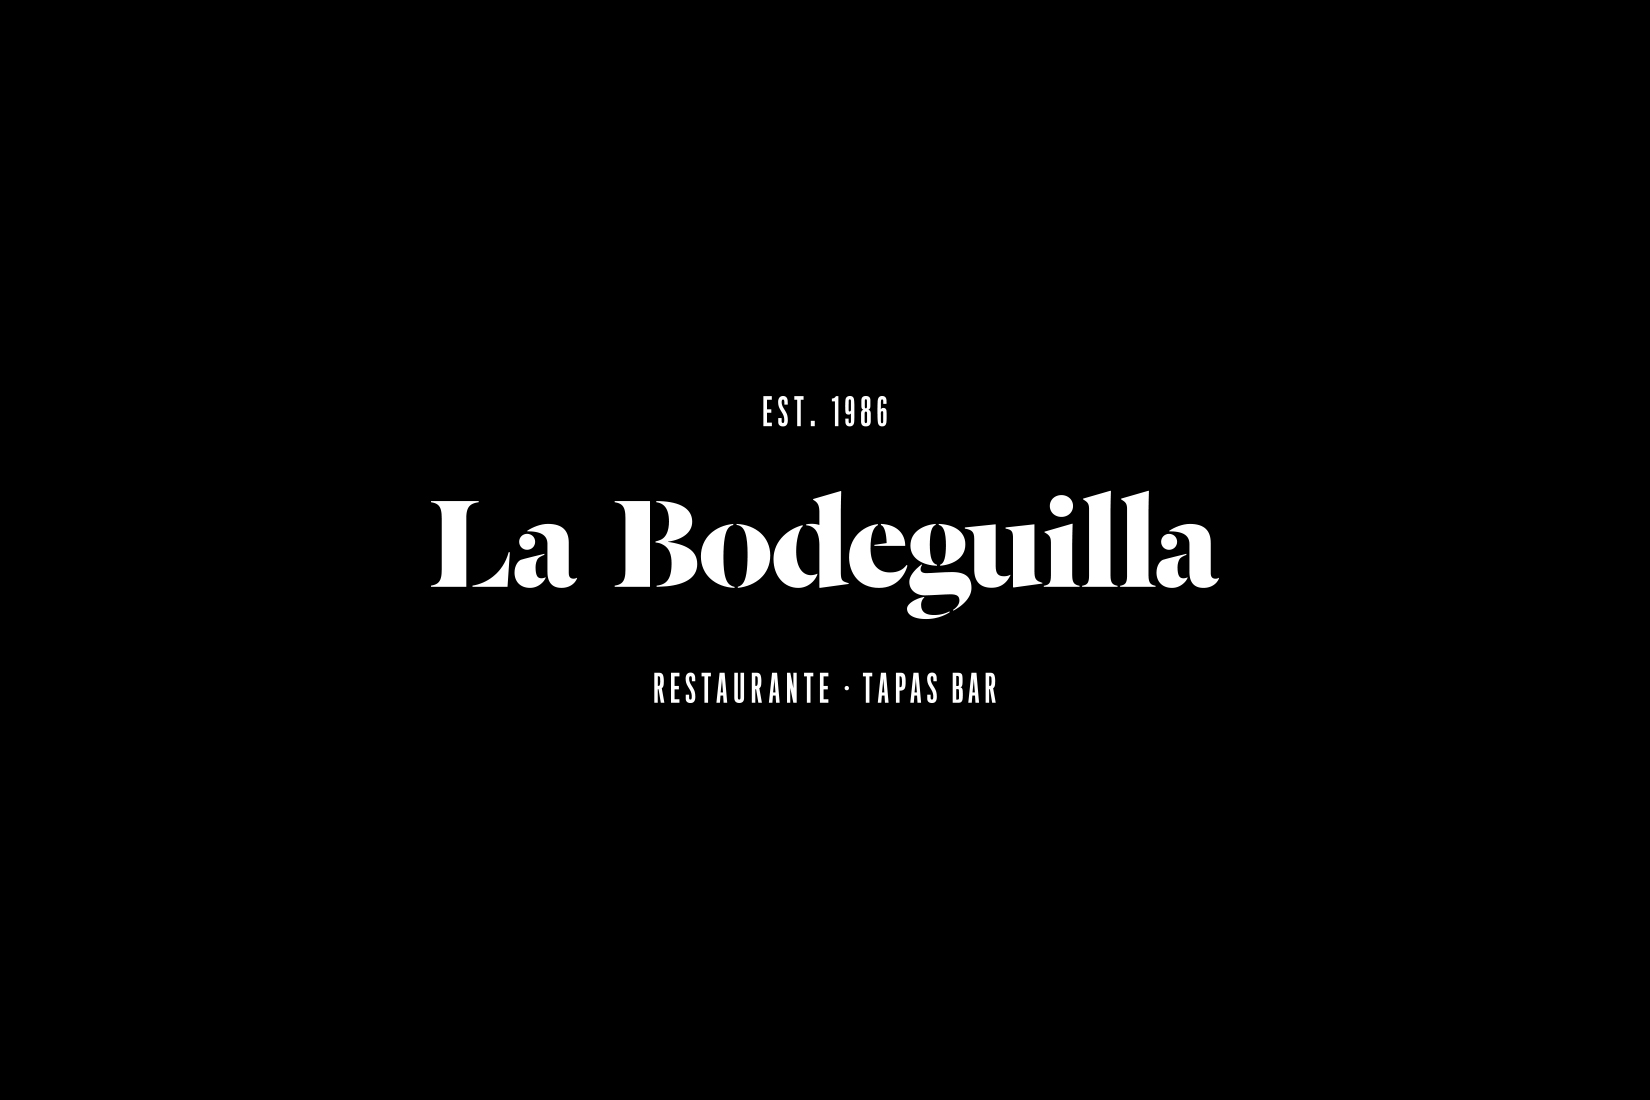 La Bodeguilla